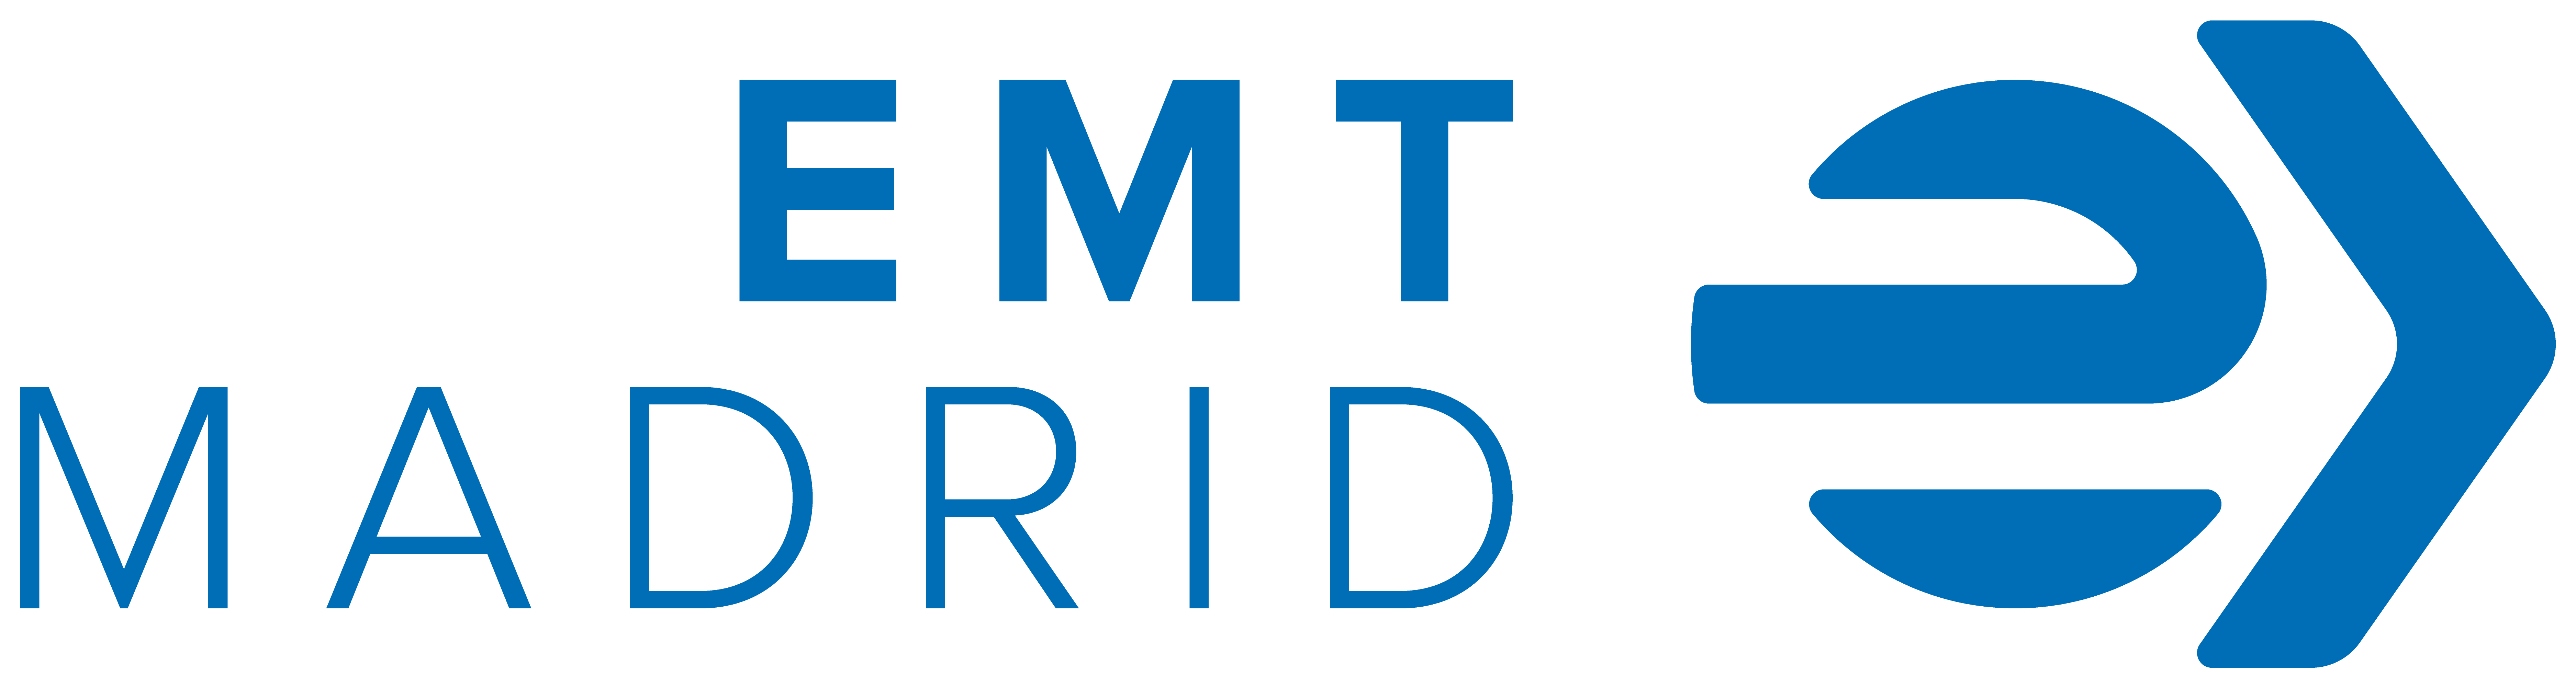 Logotipo EMT